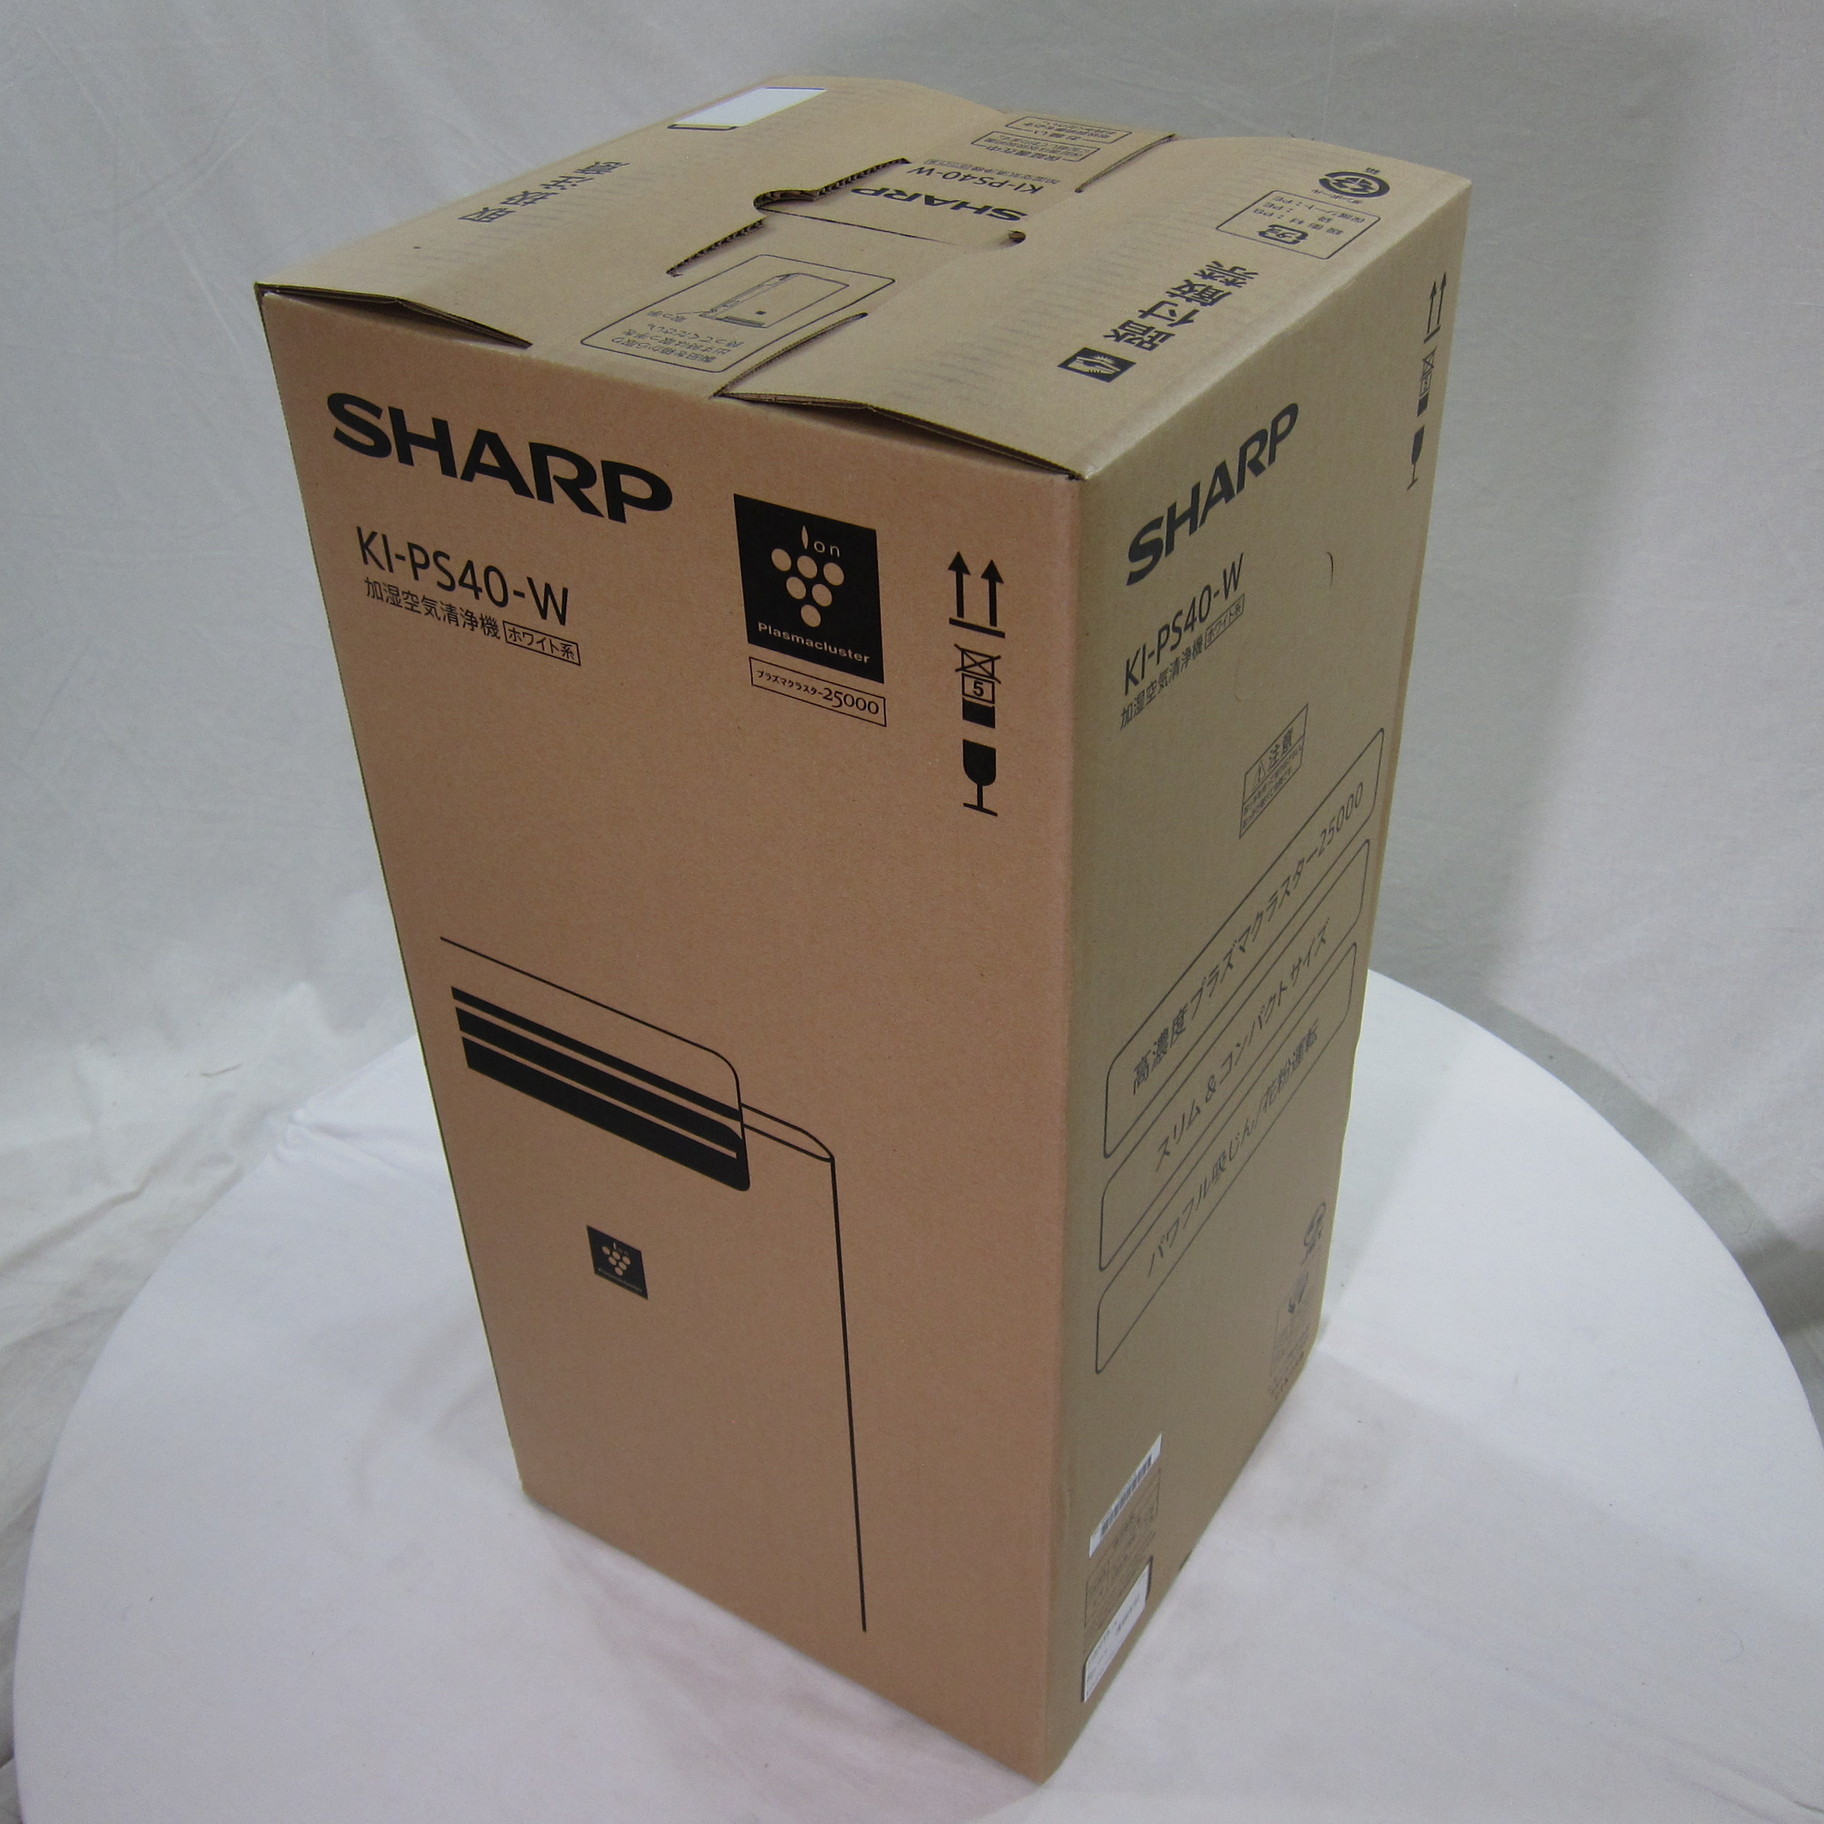 新品未開封品　SHARP プラズマクラスター 加湿空気清浄機 KI-PS40-Wシャープ